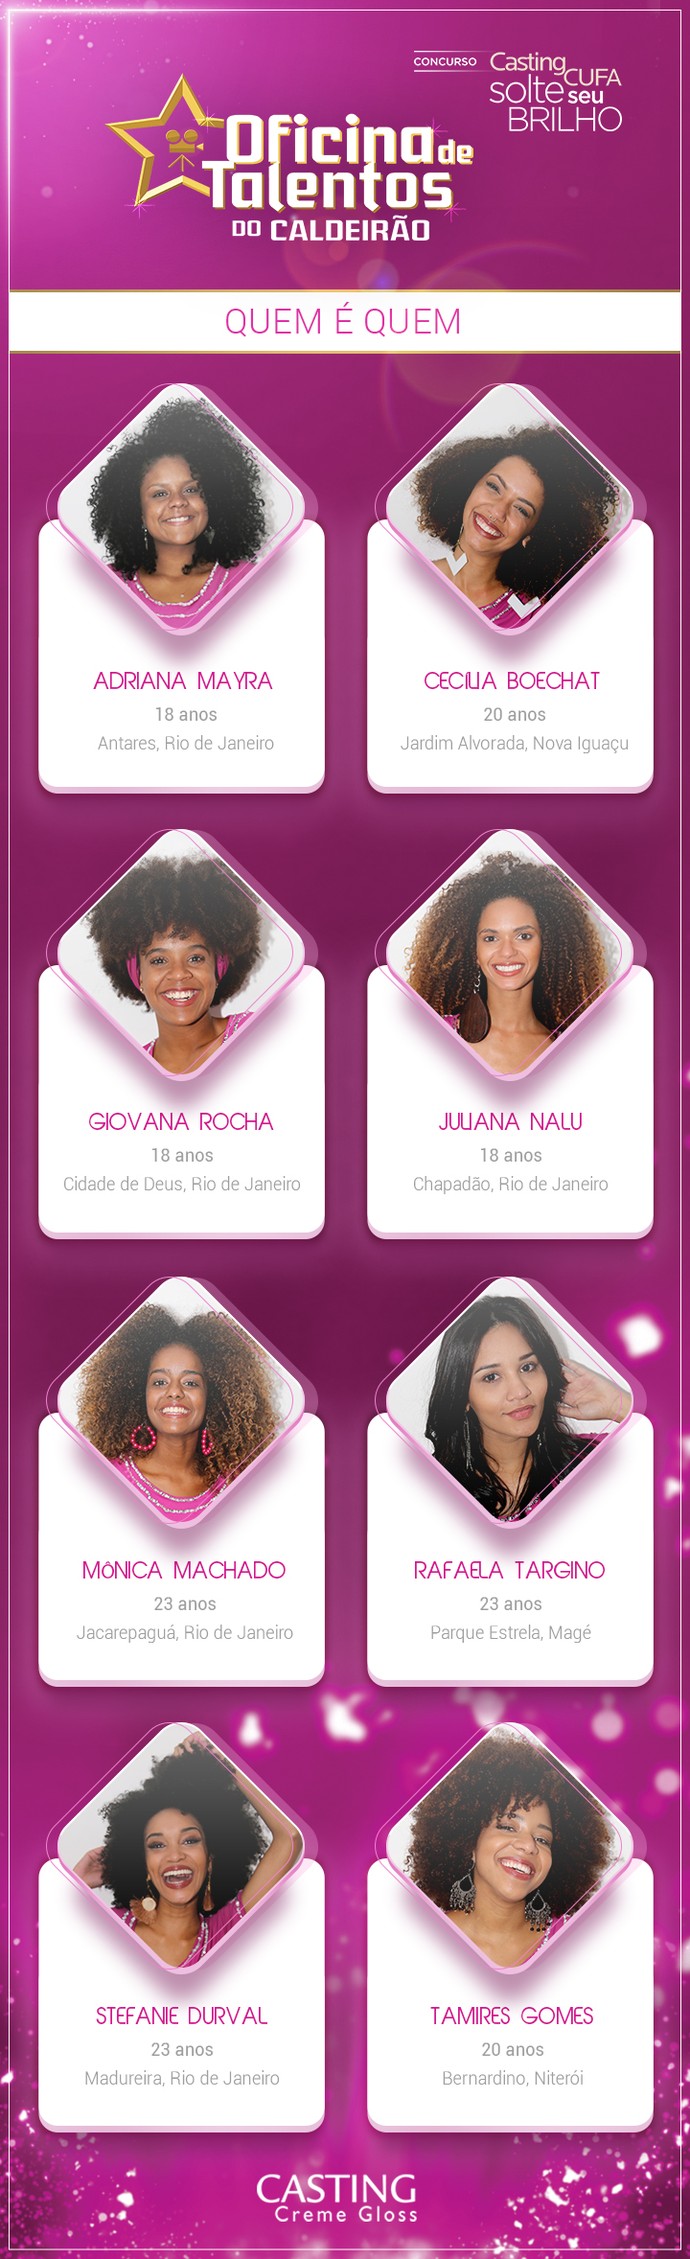 Conheça as 8 selecionadas do concurso "Casting Cufa Solte seu Brilho" (Foto: Luiz Cláudio Costa)